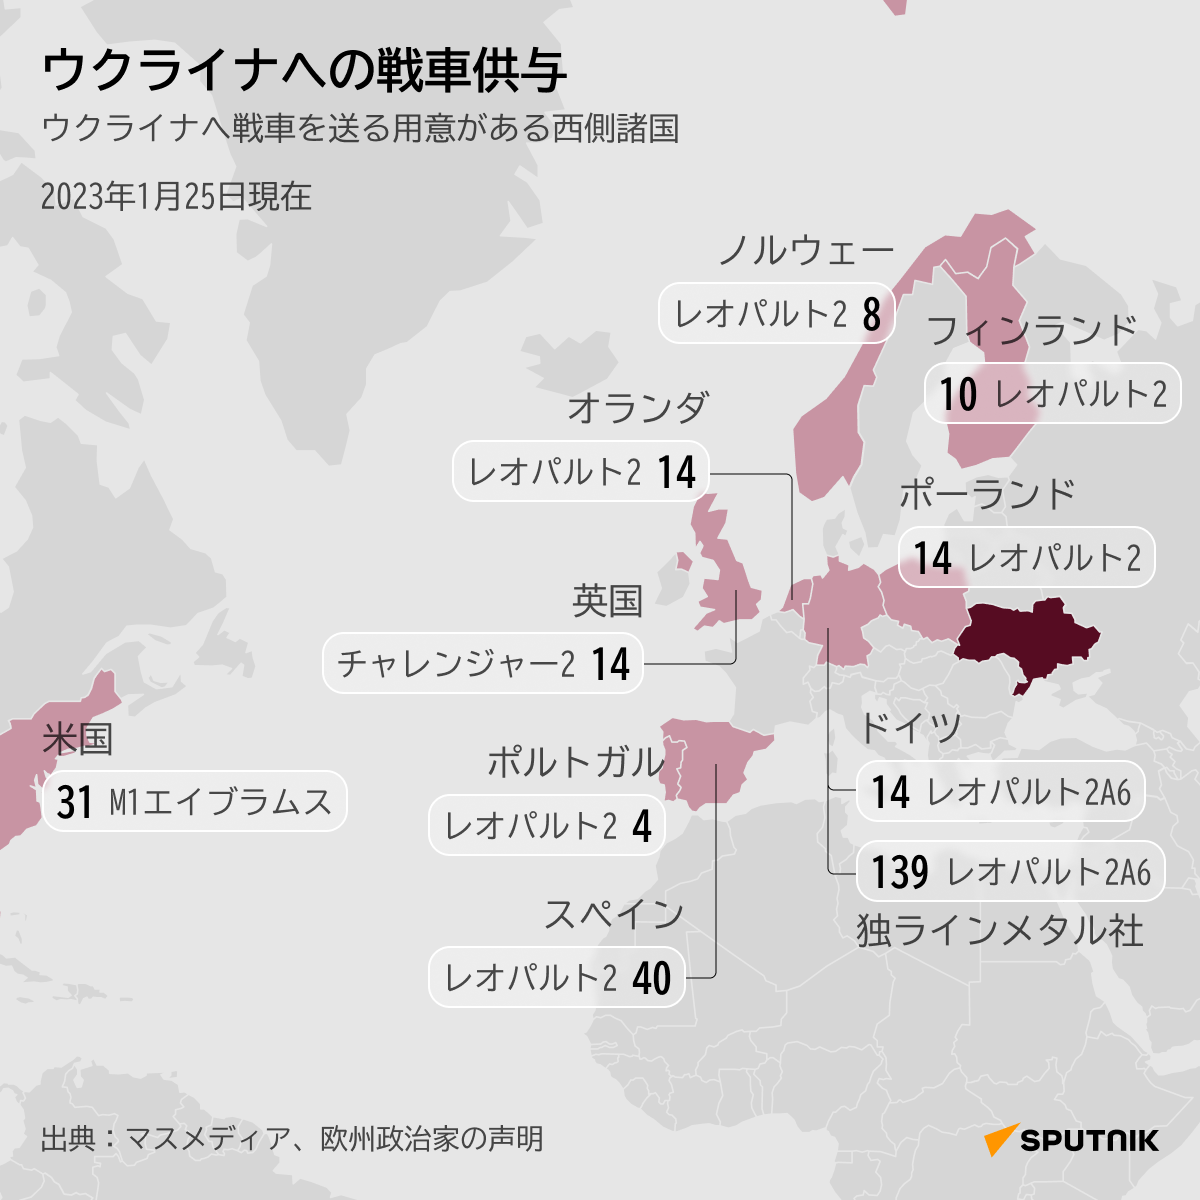 ウクライナへの戦車供与 - Sputnik 日本